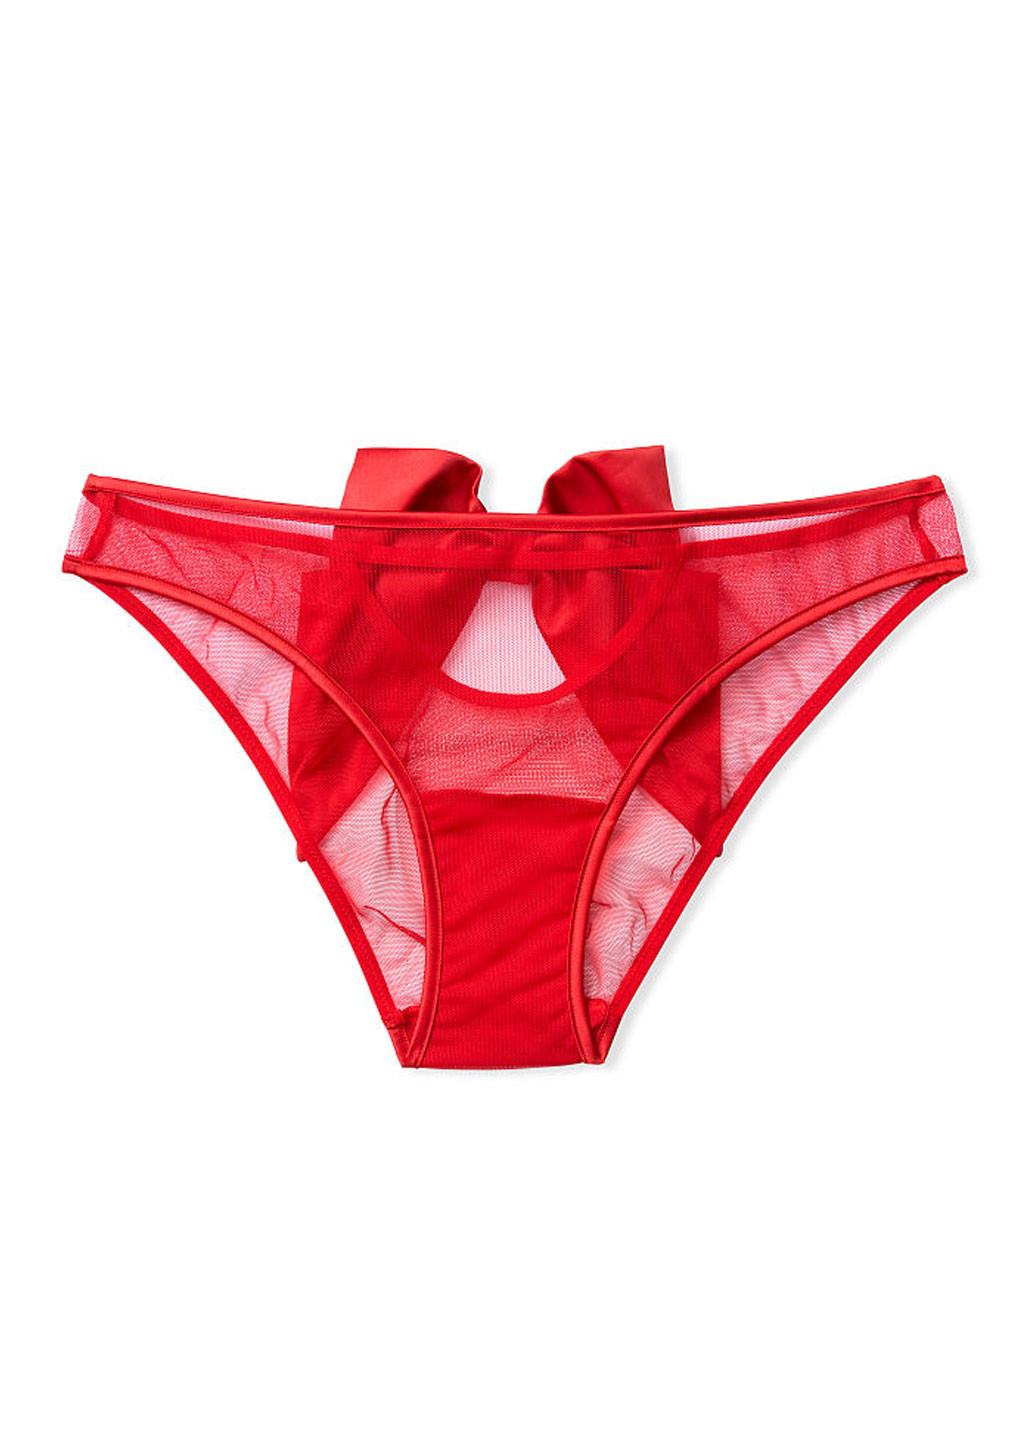 Трусики Victoria's Secret слип однотонные красные откровенные полиамид